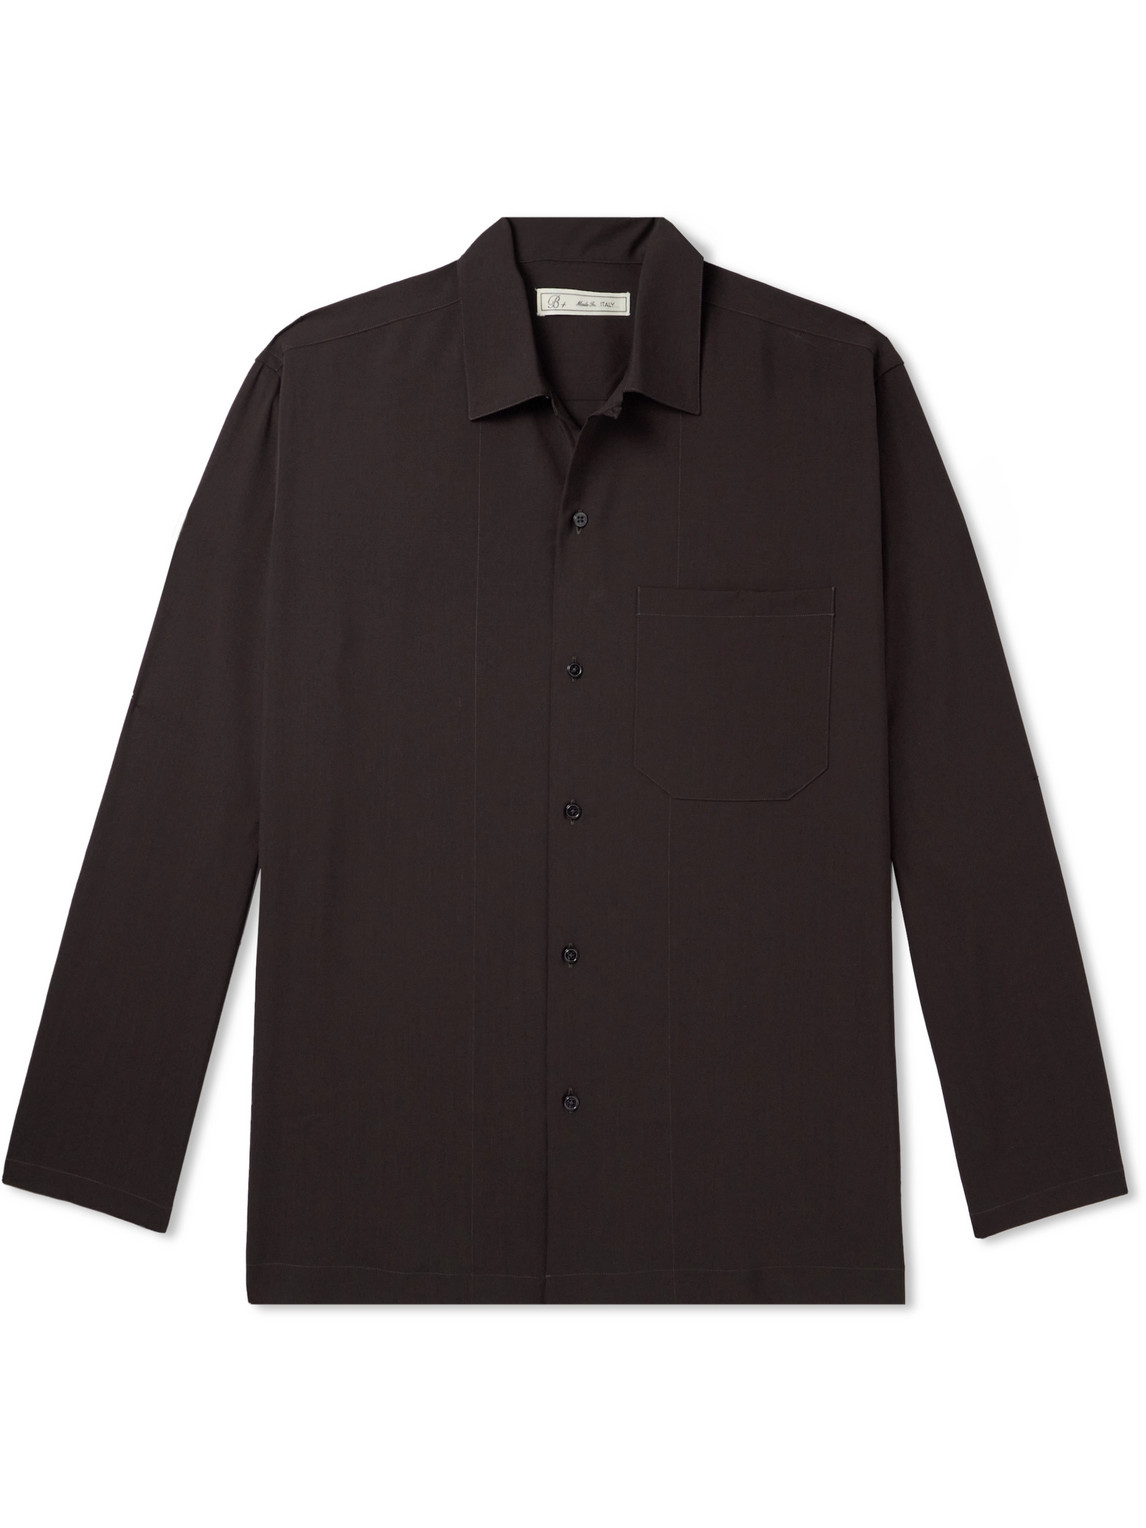 UMIT BENAN B - Convertible-Collar Virgin Wool Shirt - Men - Brown - IT 54 von UMIT BENAN B+